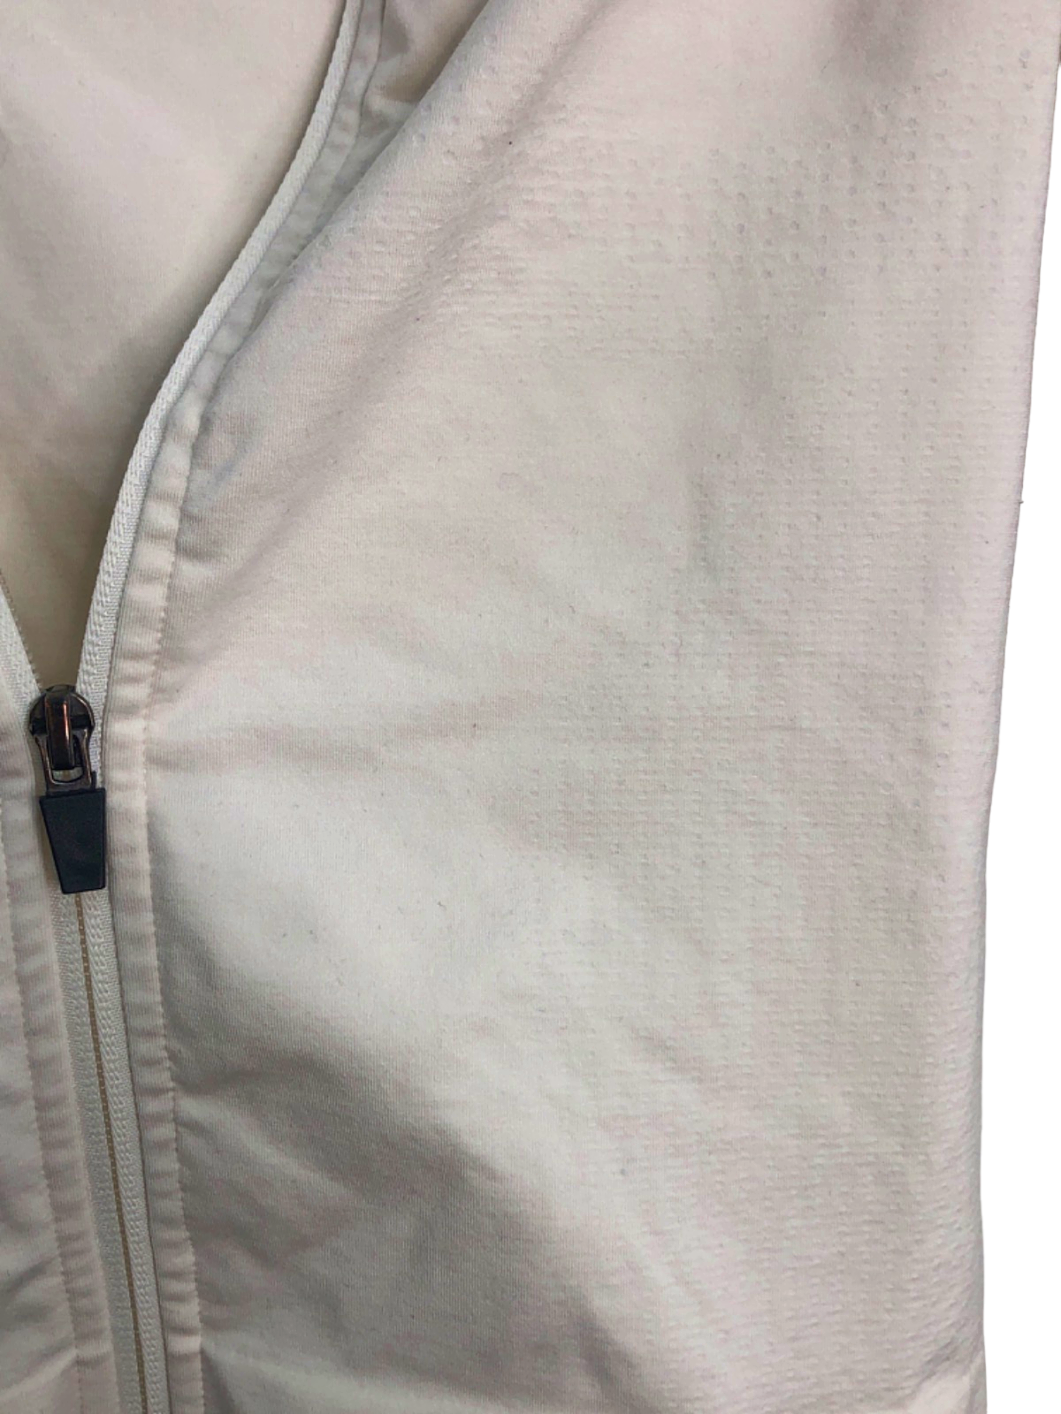 Tala White Zip-Up Athletic Jacket M